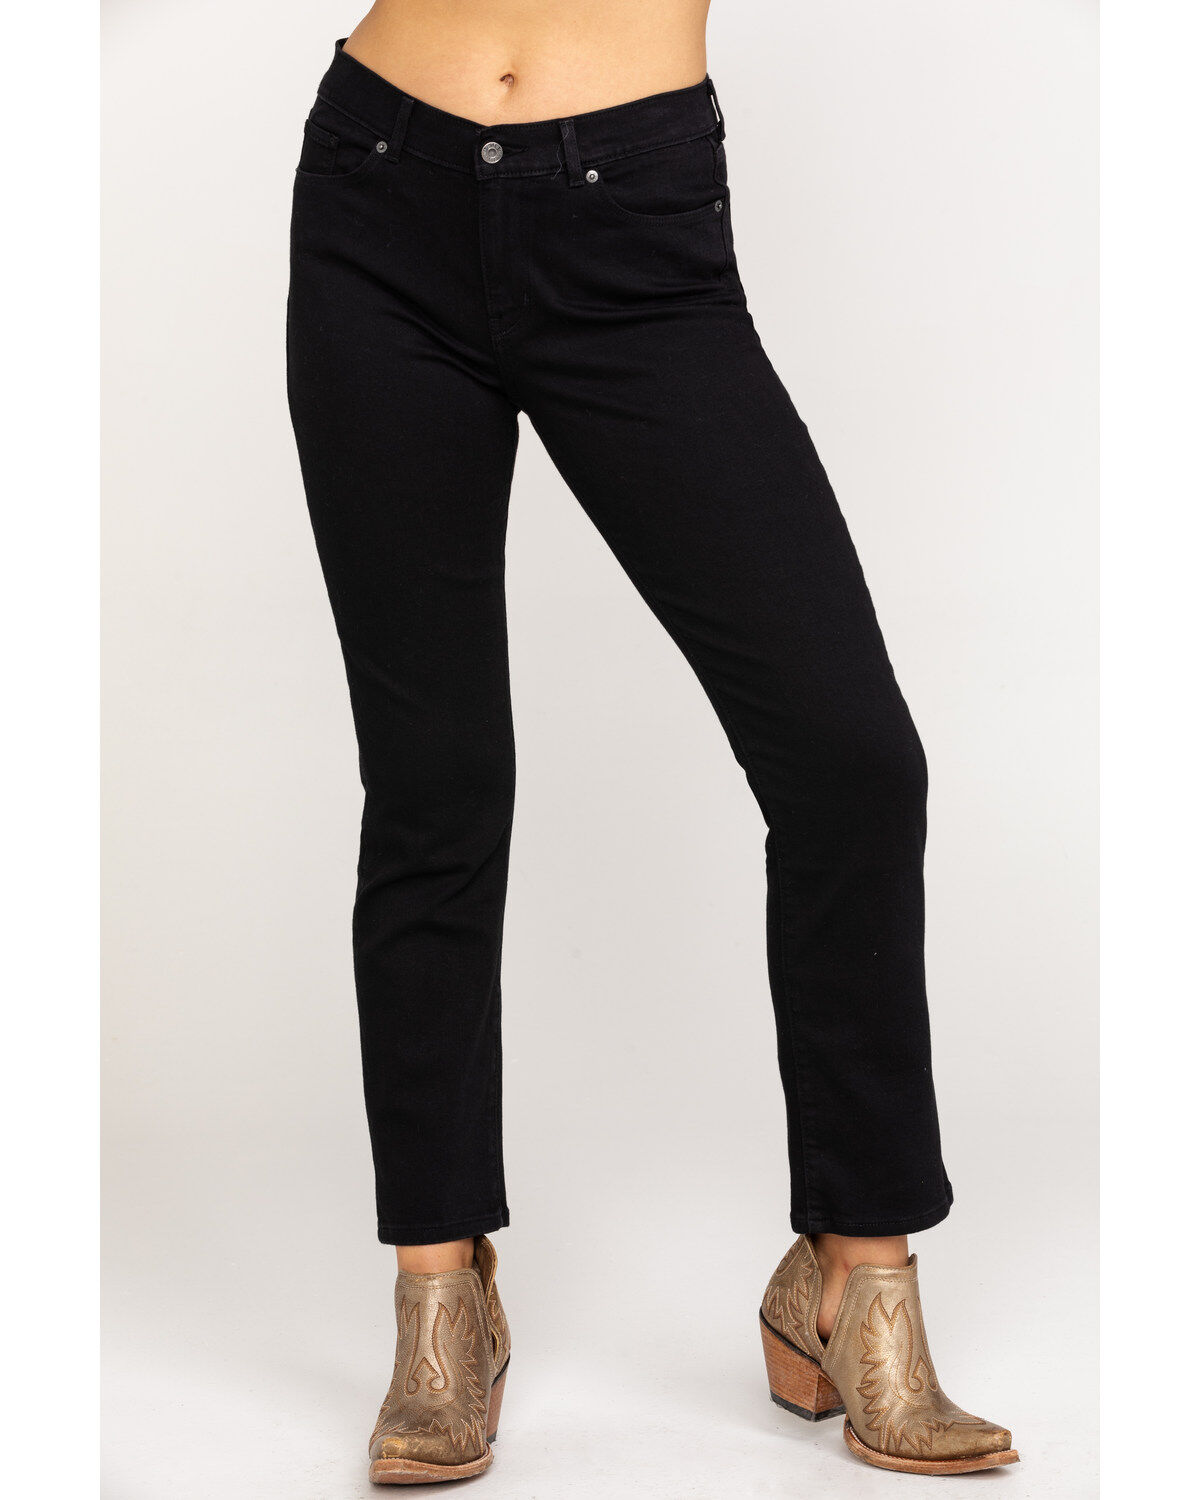 levis black jeans for women